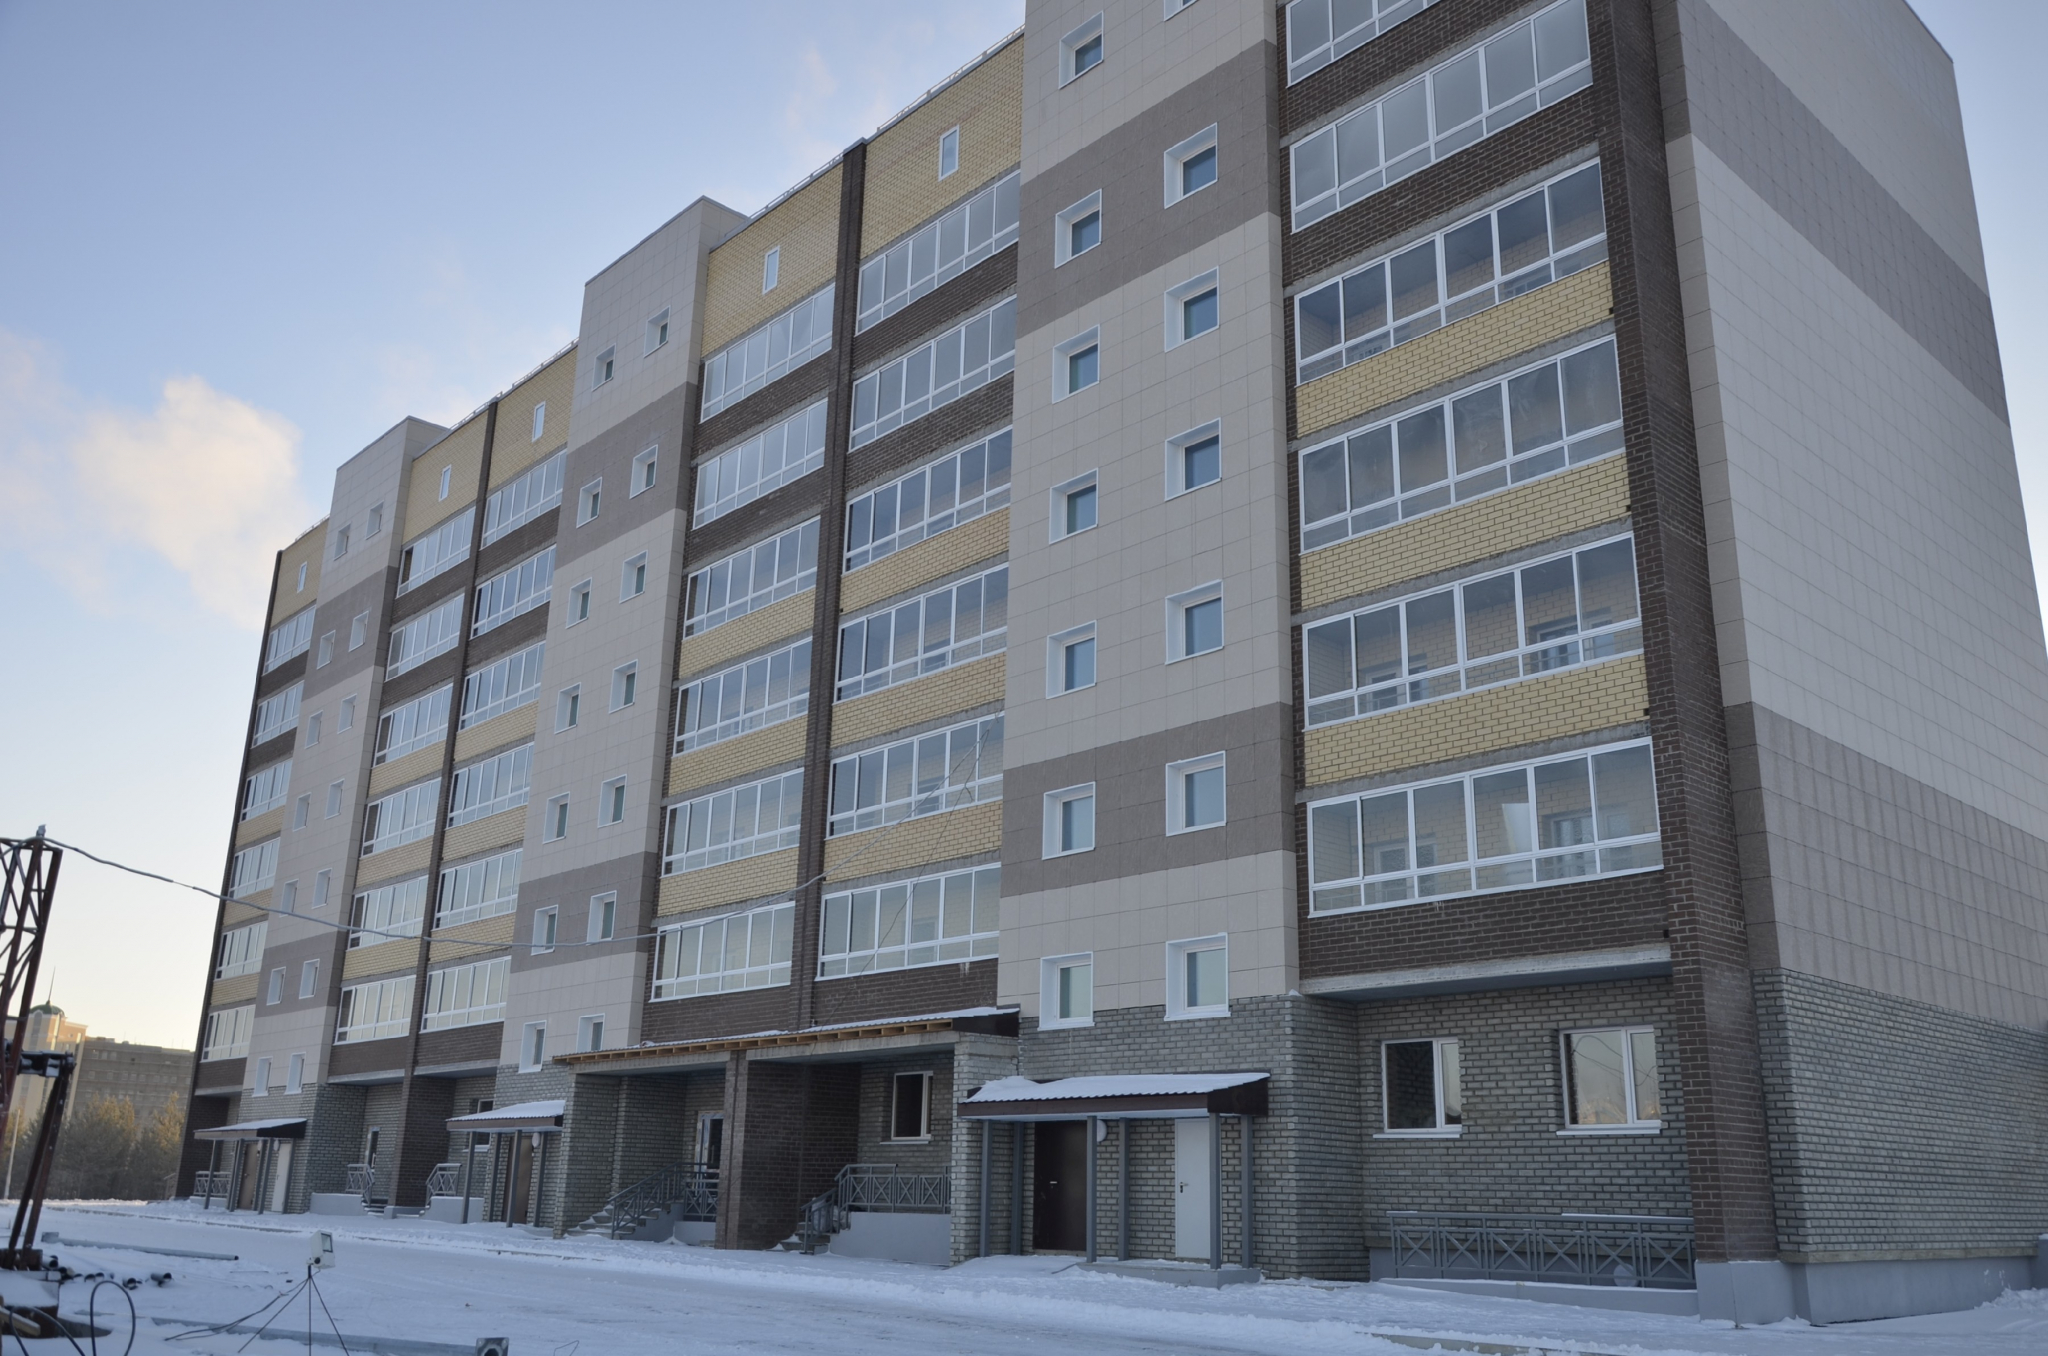 Не хватает врачей: медработникам в Пензенской области будут выдавать жилье